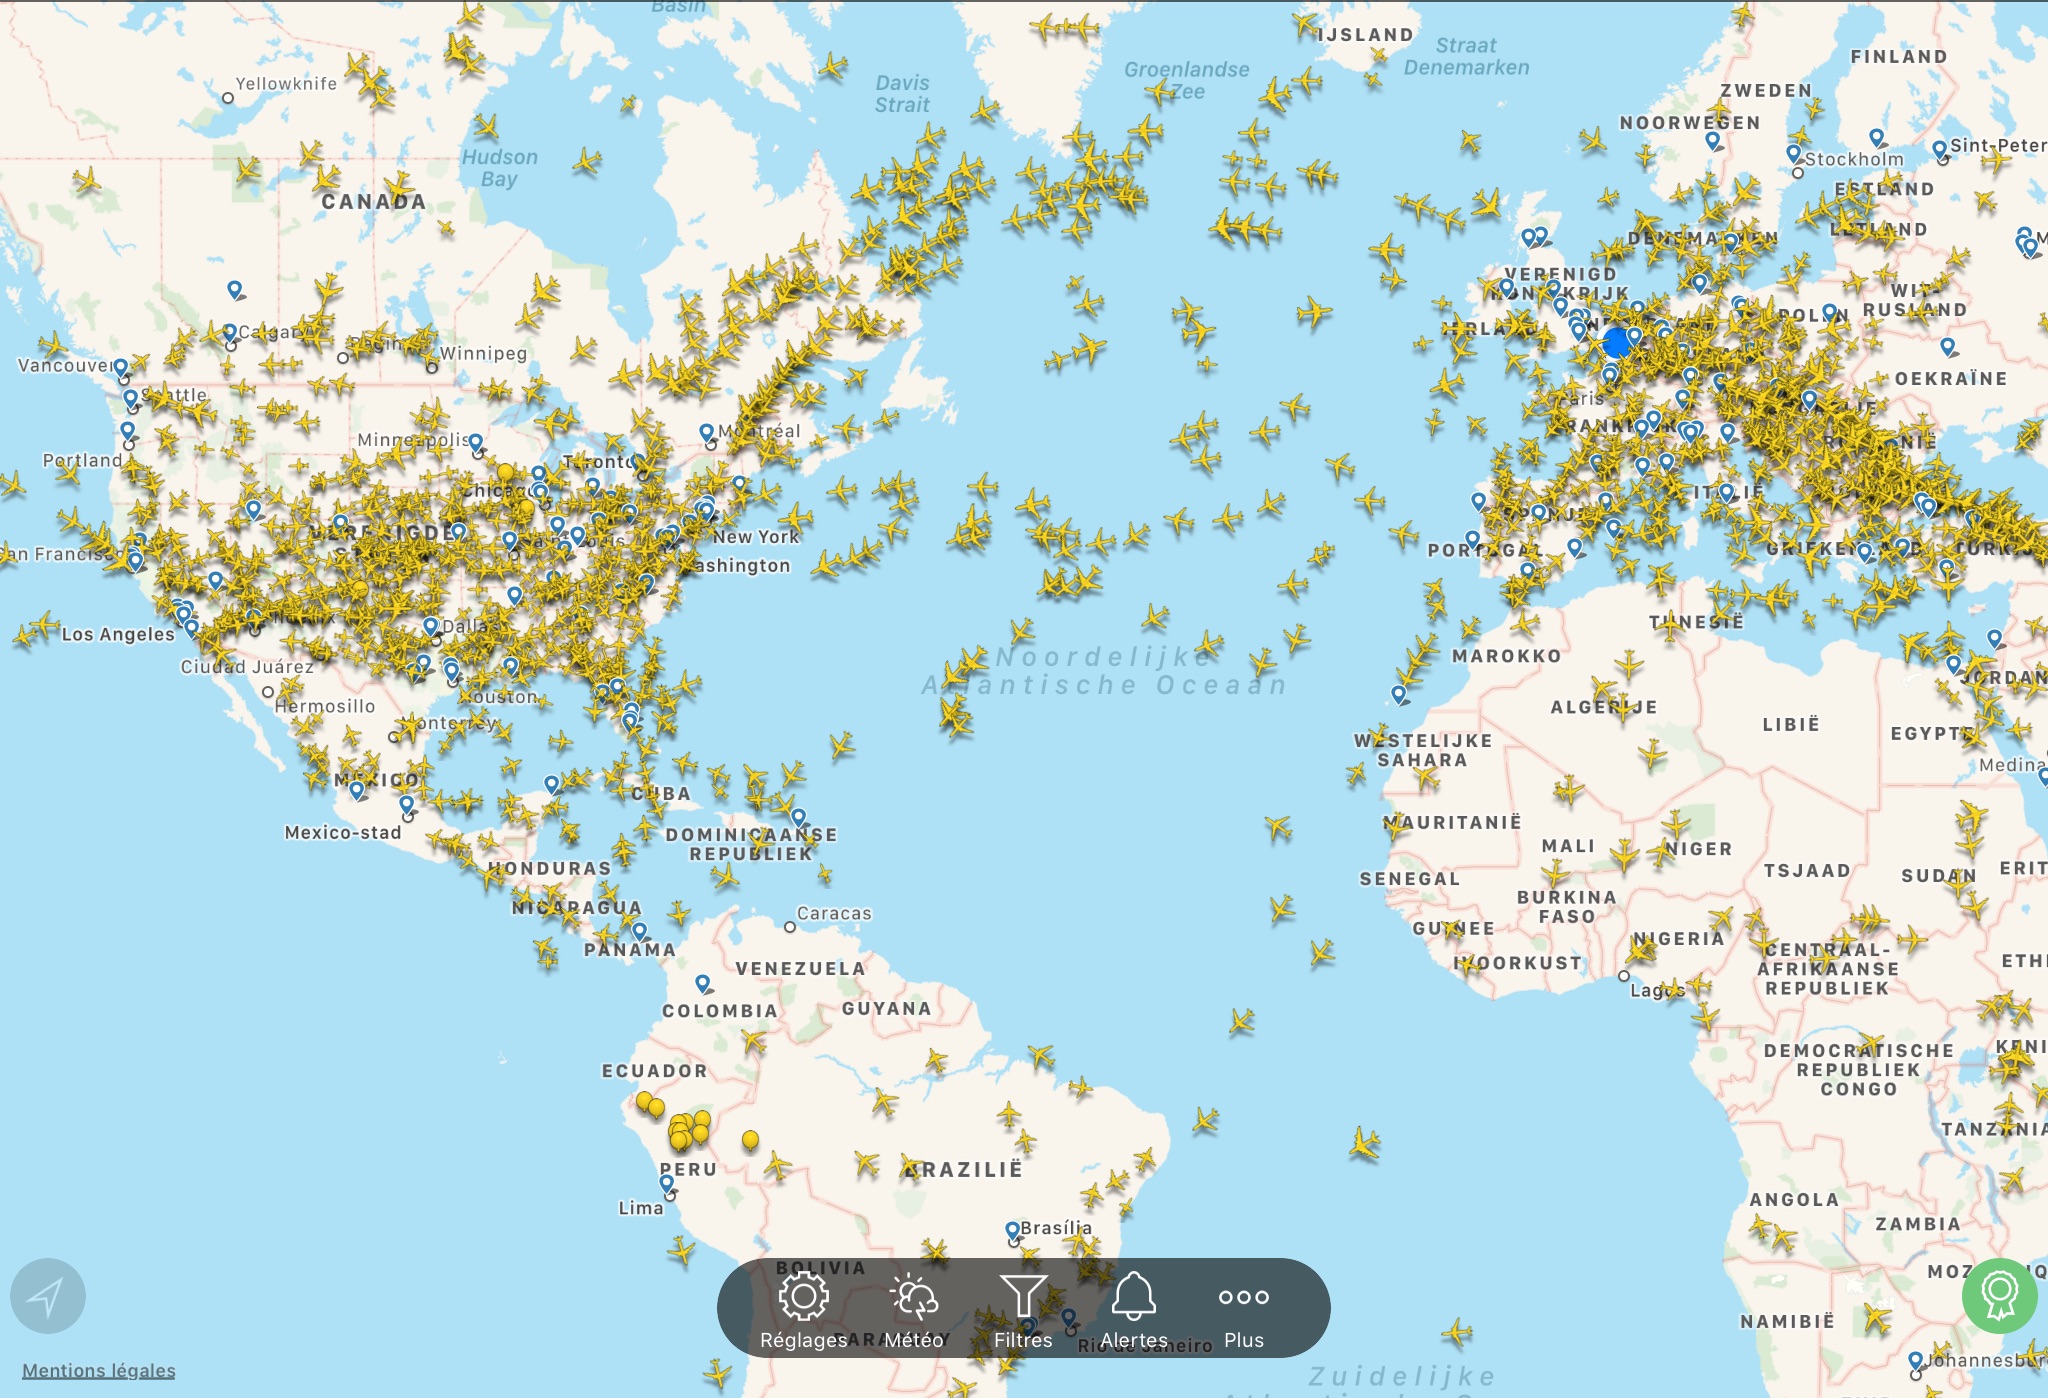 Aantal vliegtuigen volgens Flightradar24 op 24 september 2019